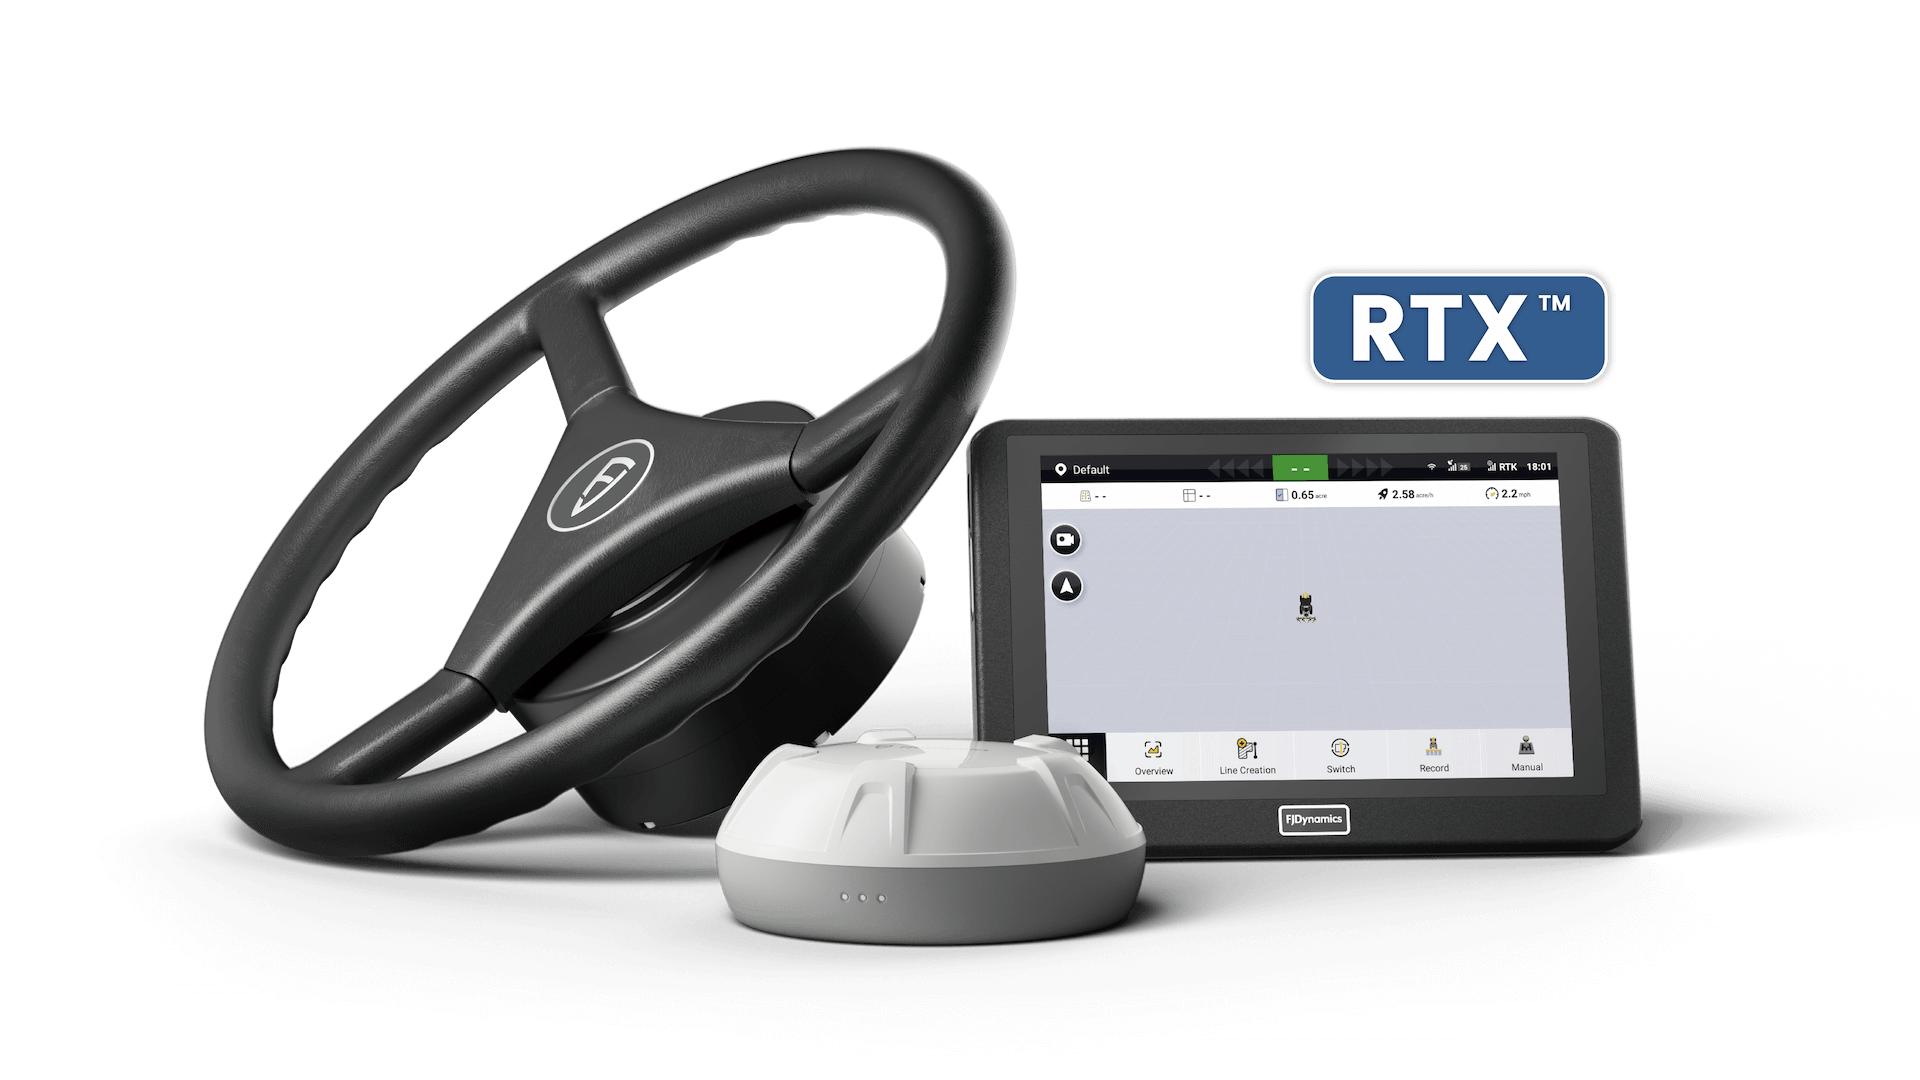 El FJD AT2 PRO está equipado con hardware integrado de corrección RTX, que ofrece una precisión de posicionamiento de centímetros a través de un servicio de suscripción.Está disponible en todo el mundo sin necesidad de una estación base o conexión del Internet que limite el área de operación.​